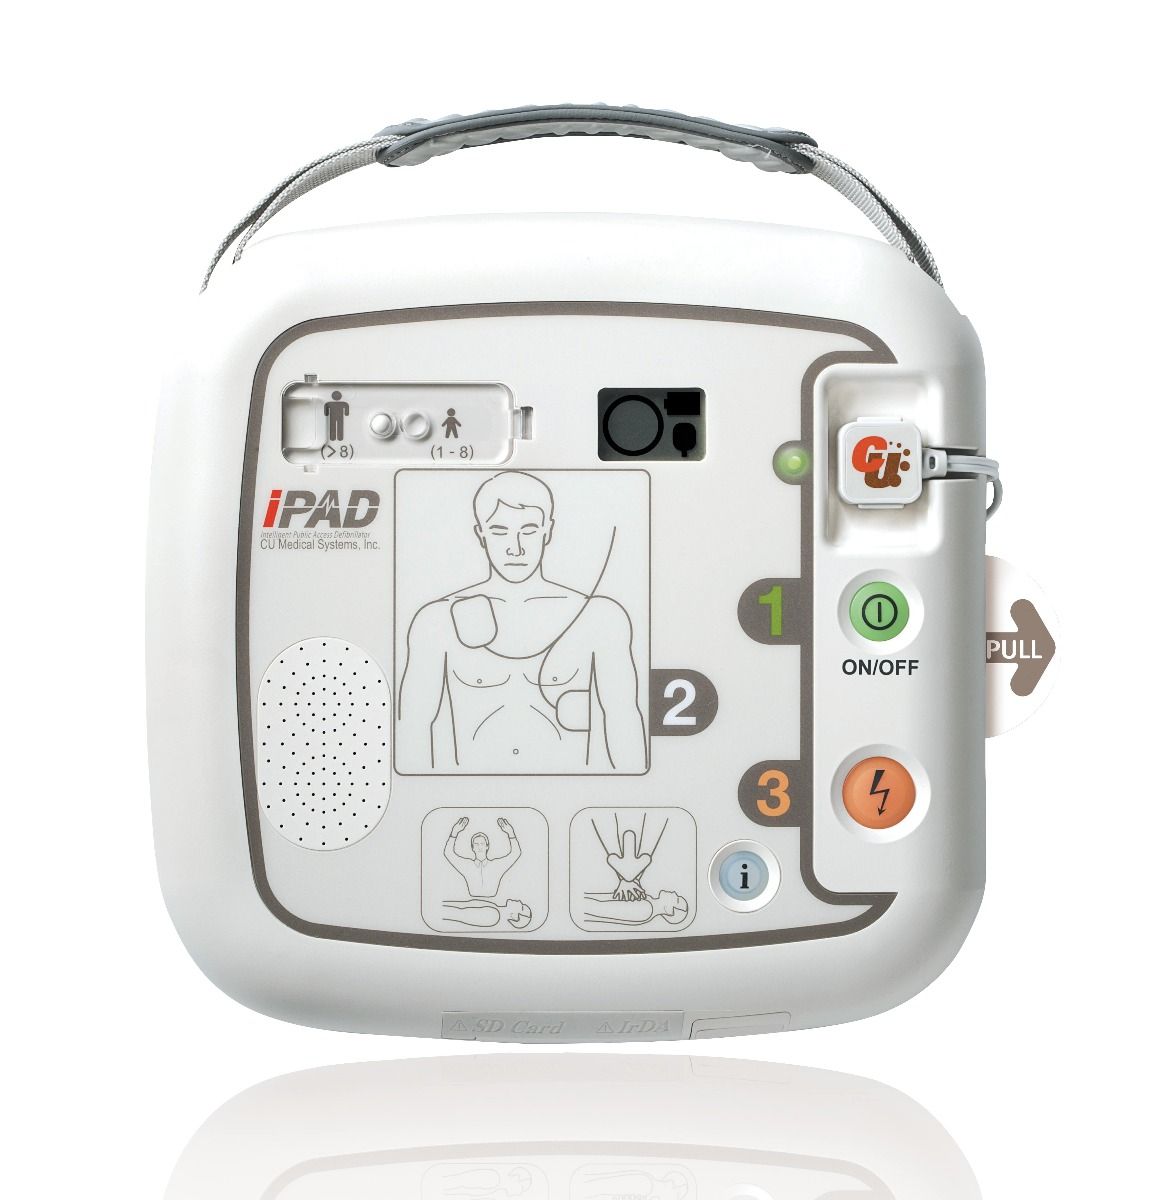 DEFIBRILLATOR CU-SP1 iPAD AED photo